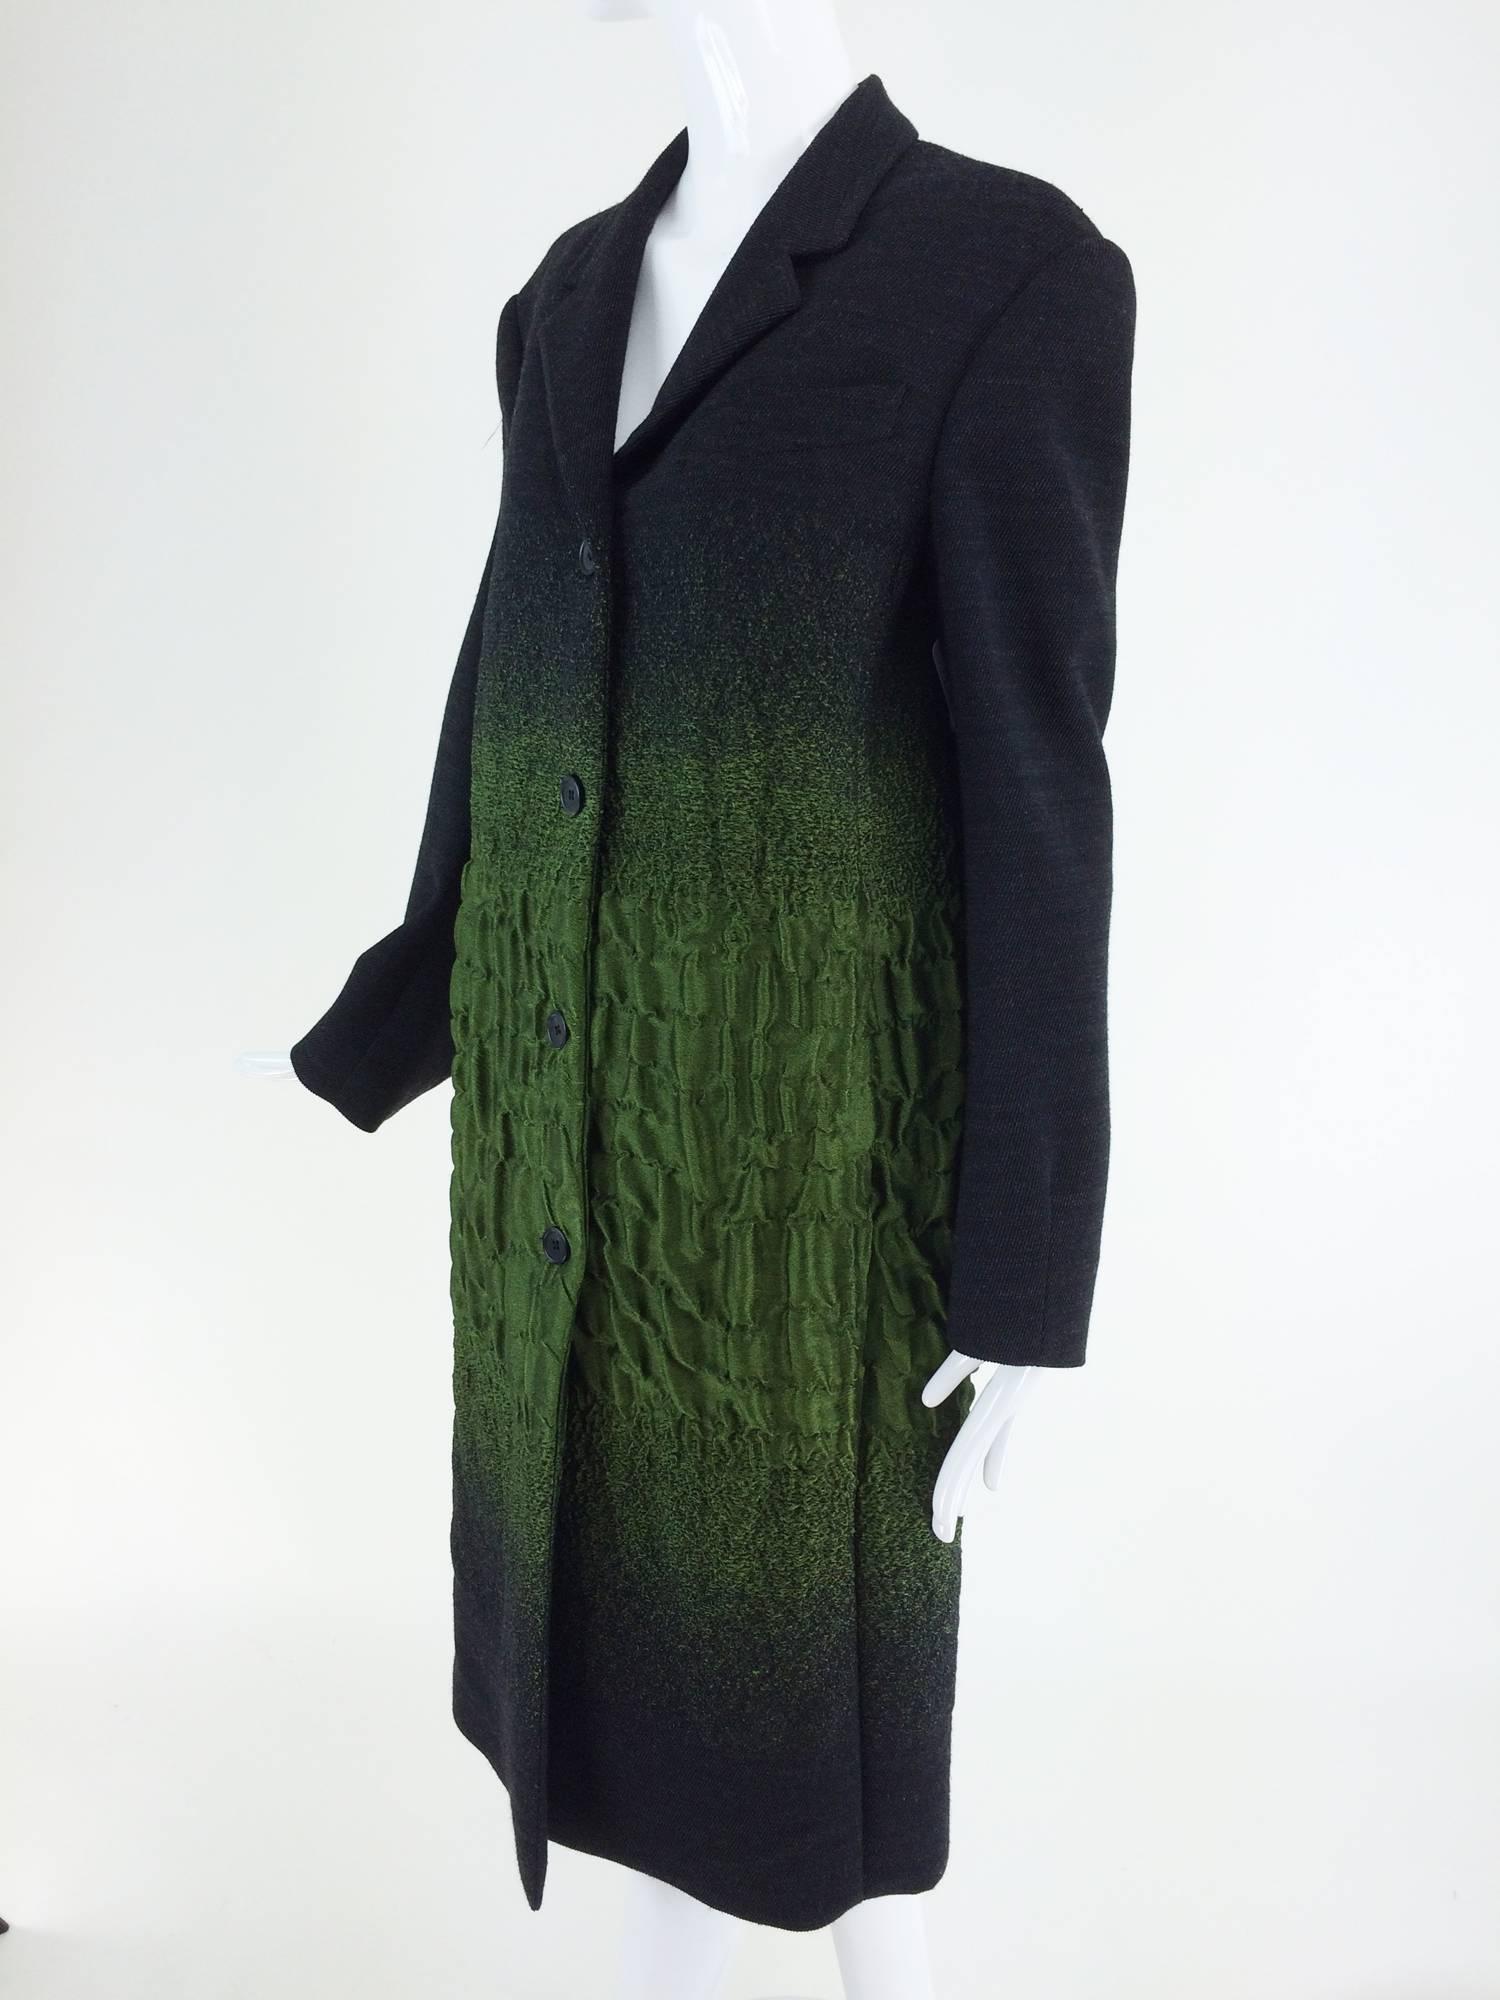 Prada A/W 2007 runway look #19 green/gray textured wool coat  1